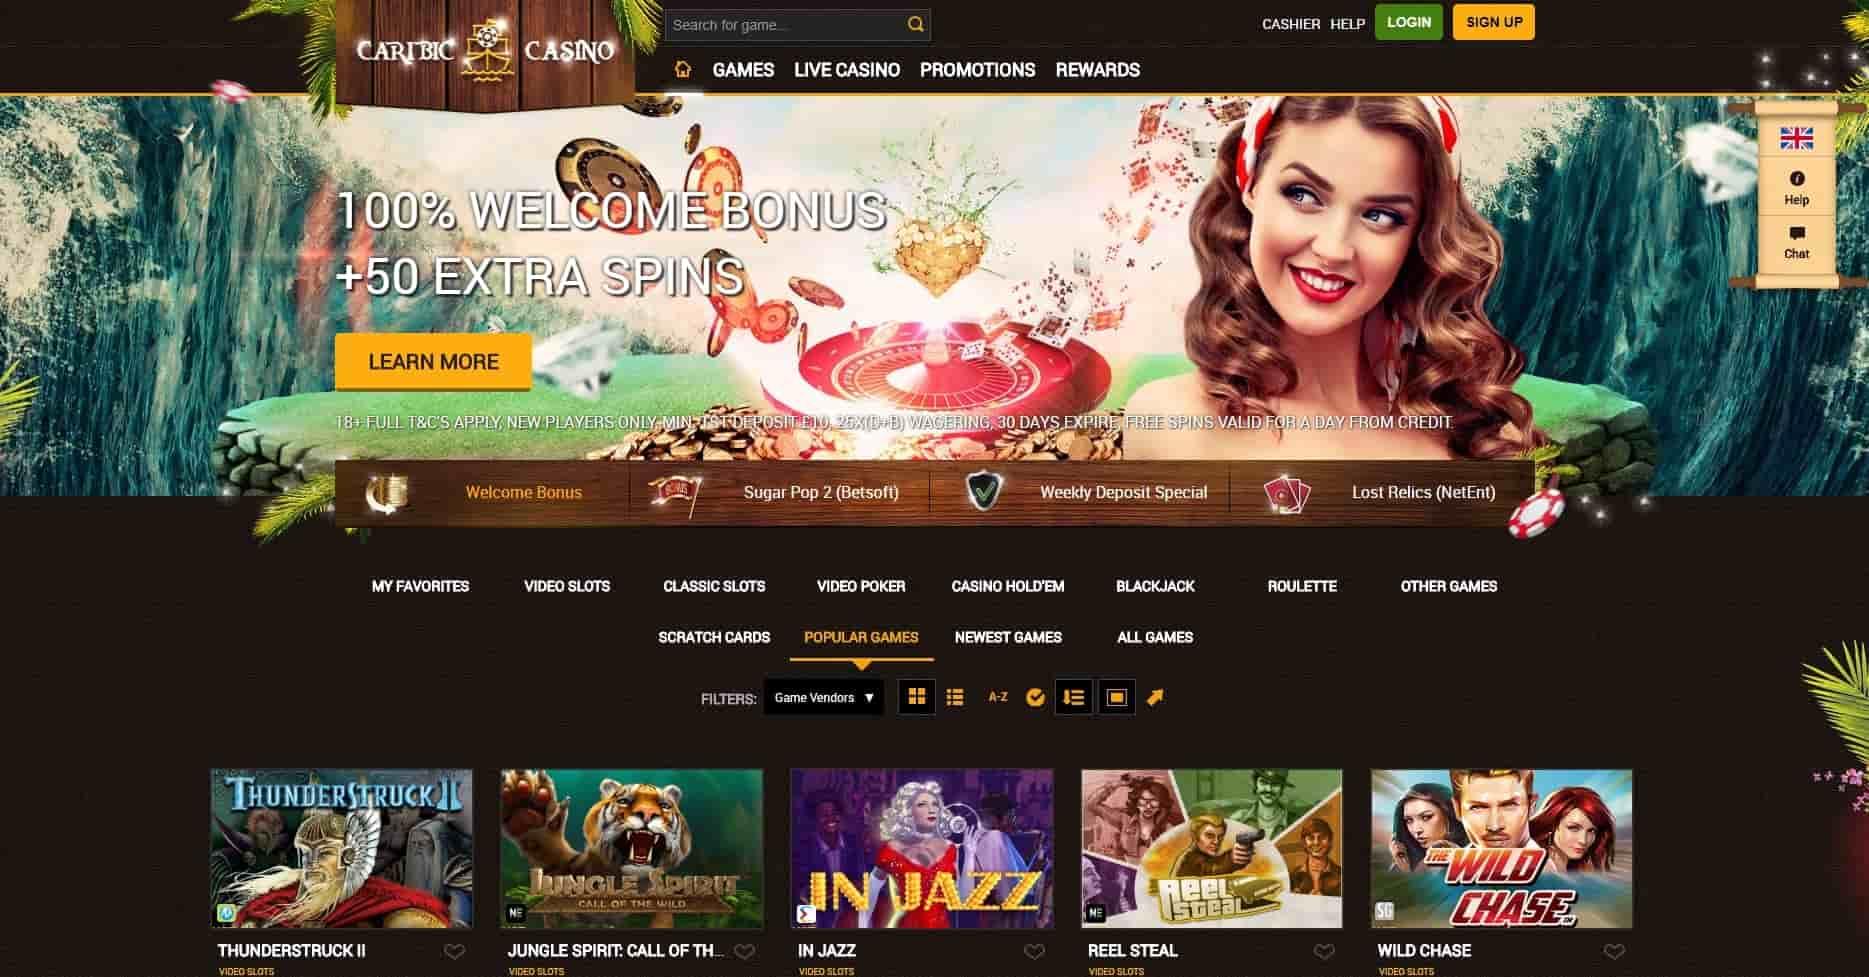 Caribic casino homepage